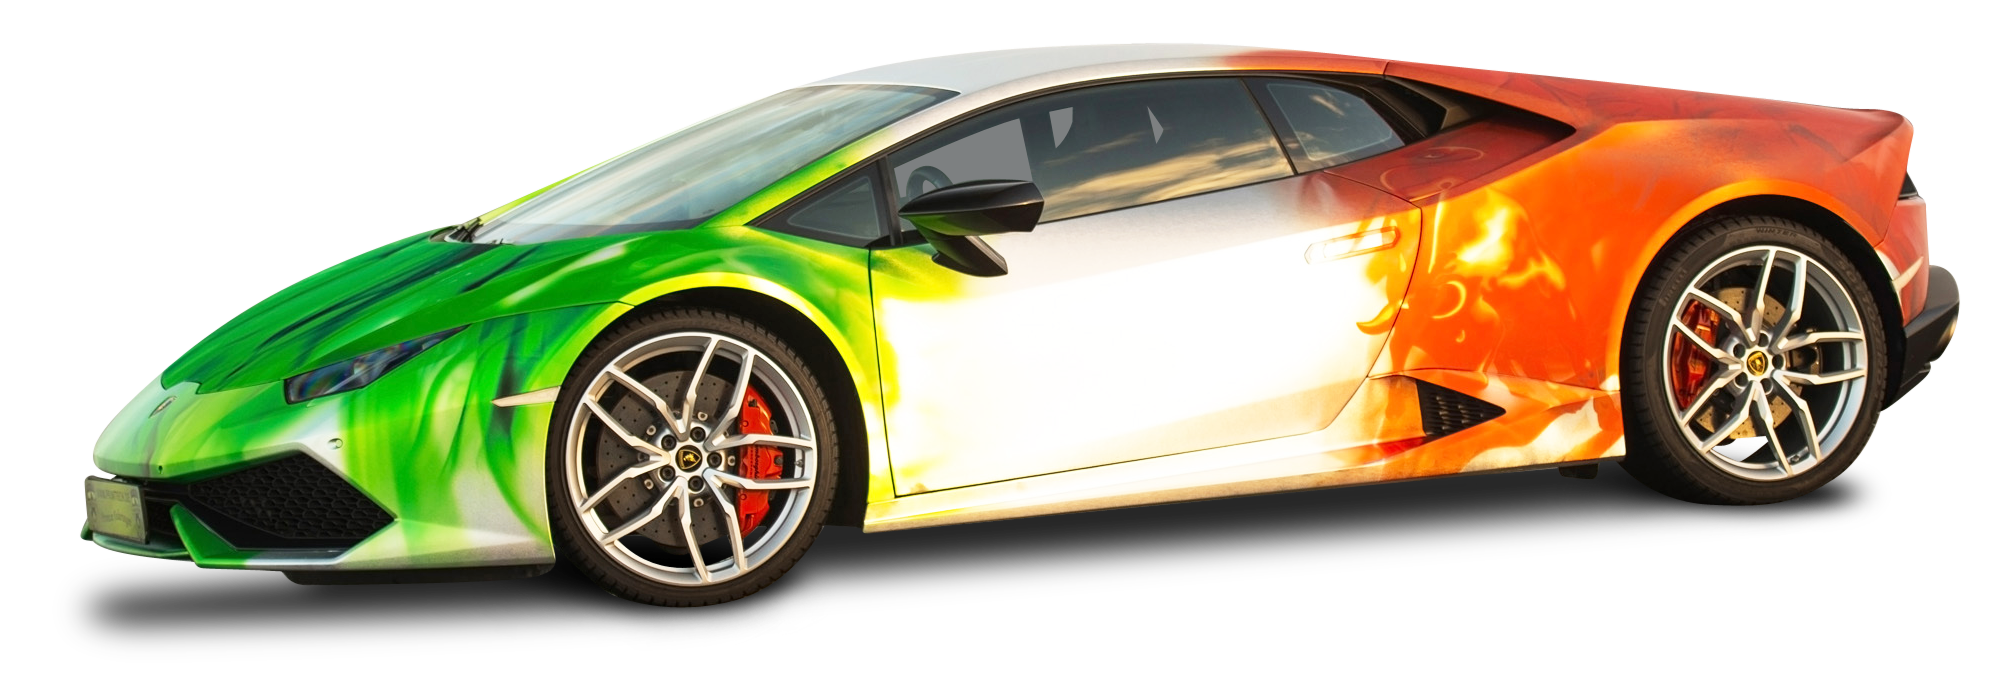 Download Lamborghini Huracan Car PNG Image for Free